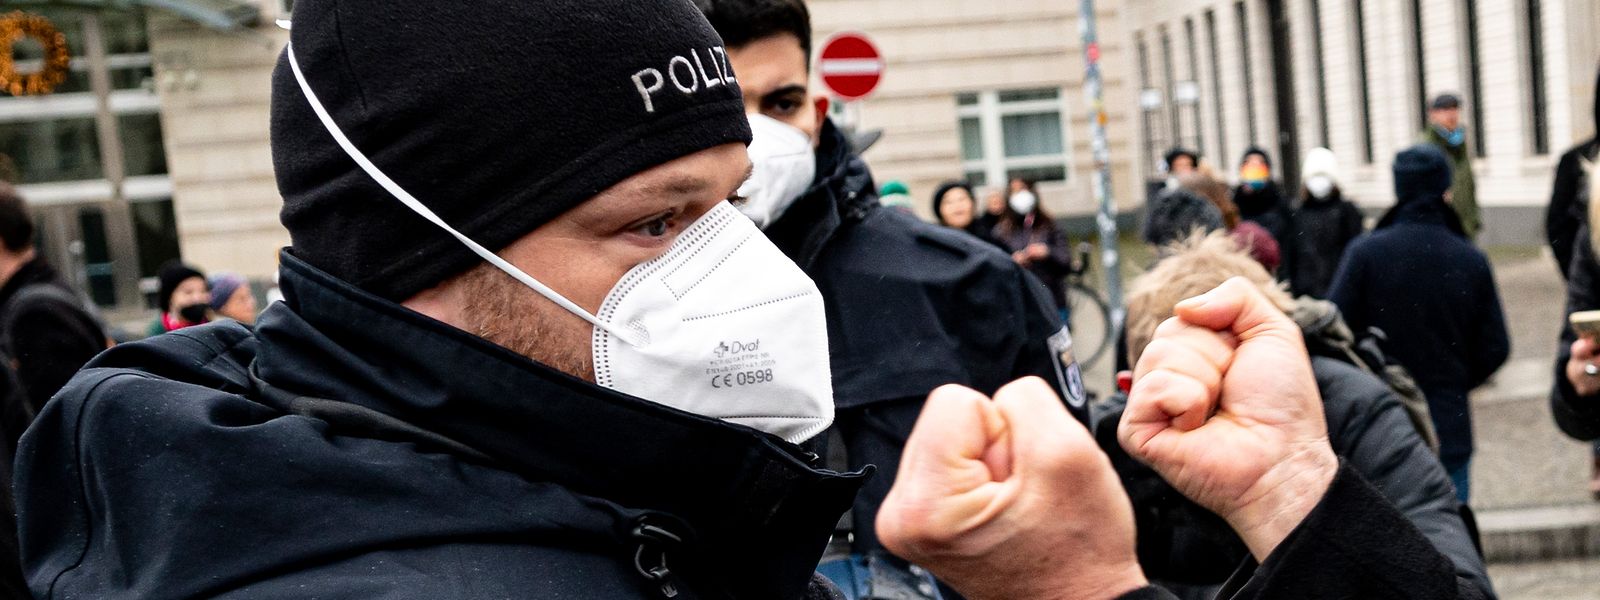 Die Gewalt gegen Polizistinnen und Polizisten in Deutschland nimmt zu.